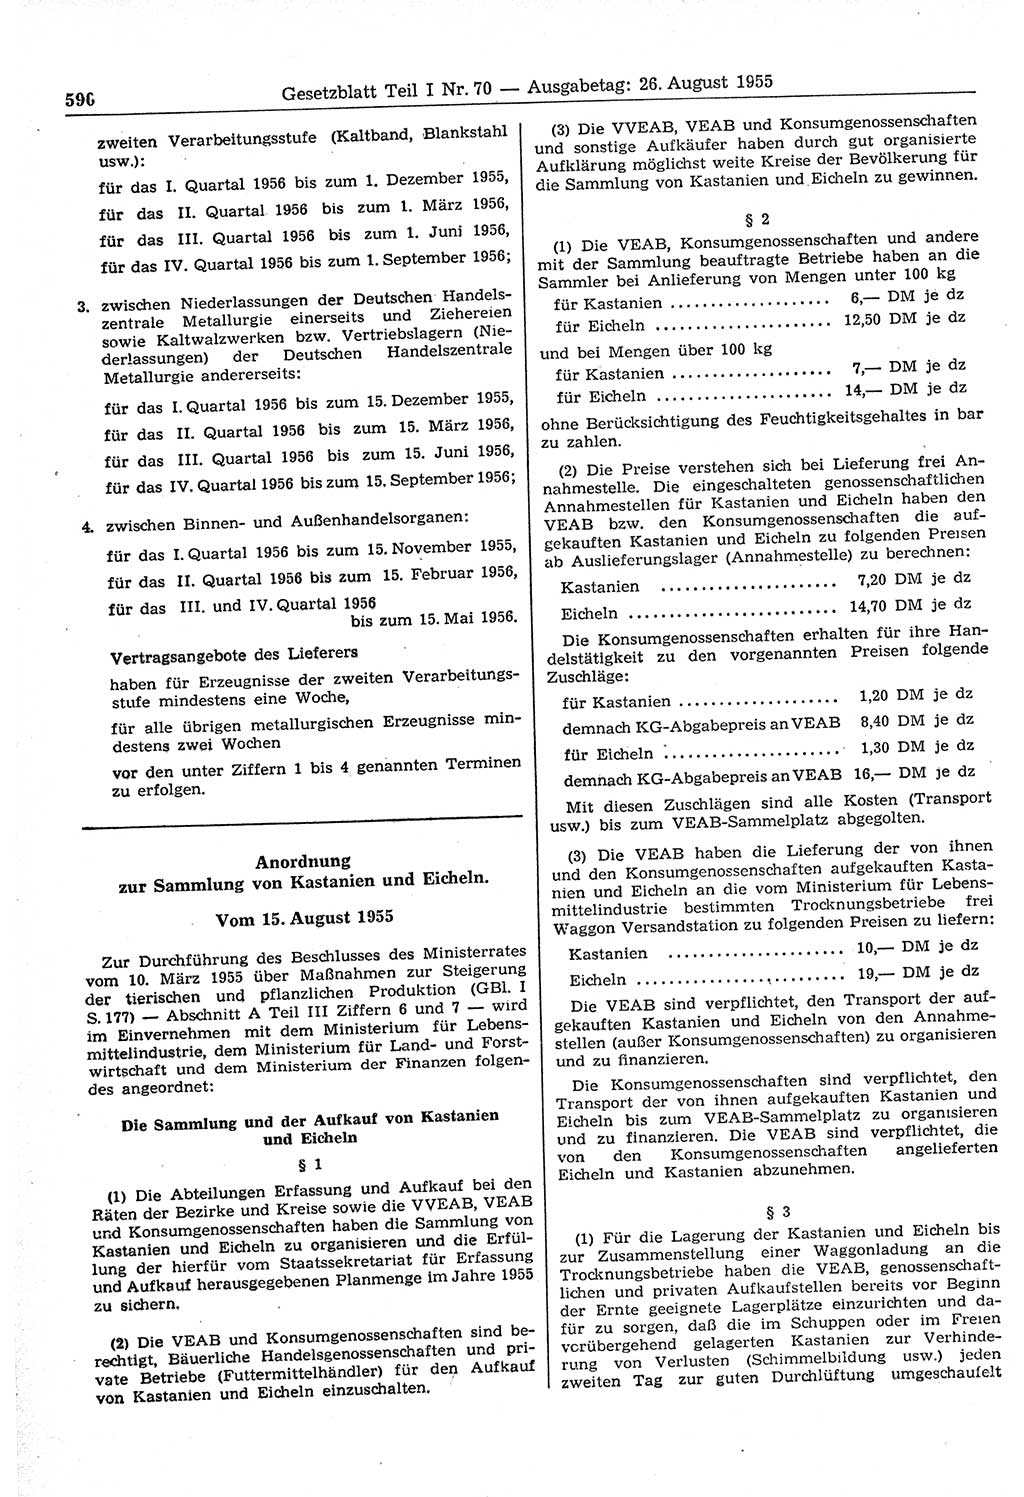 Gesetzblatt (GBl.) der Deutschen Demokratischen Republik (DDR) Teil Ⅰ 1955, Seite 590 (GBl. DDR Ⅰ 1955, S. 590)